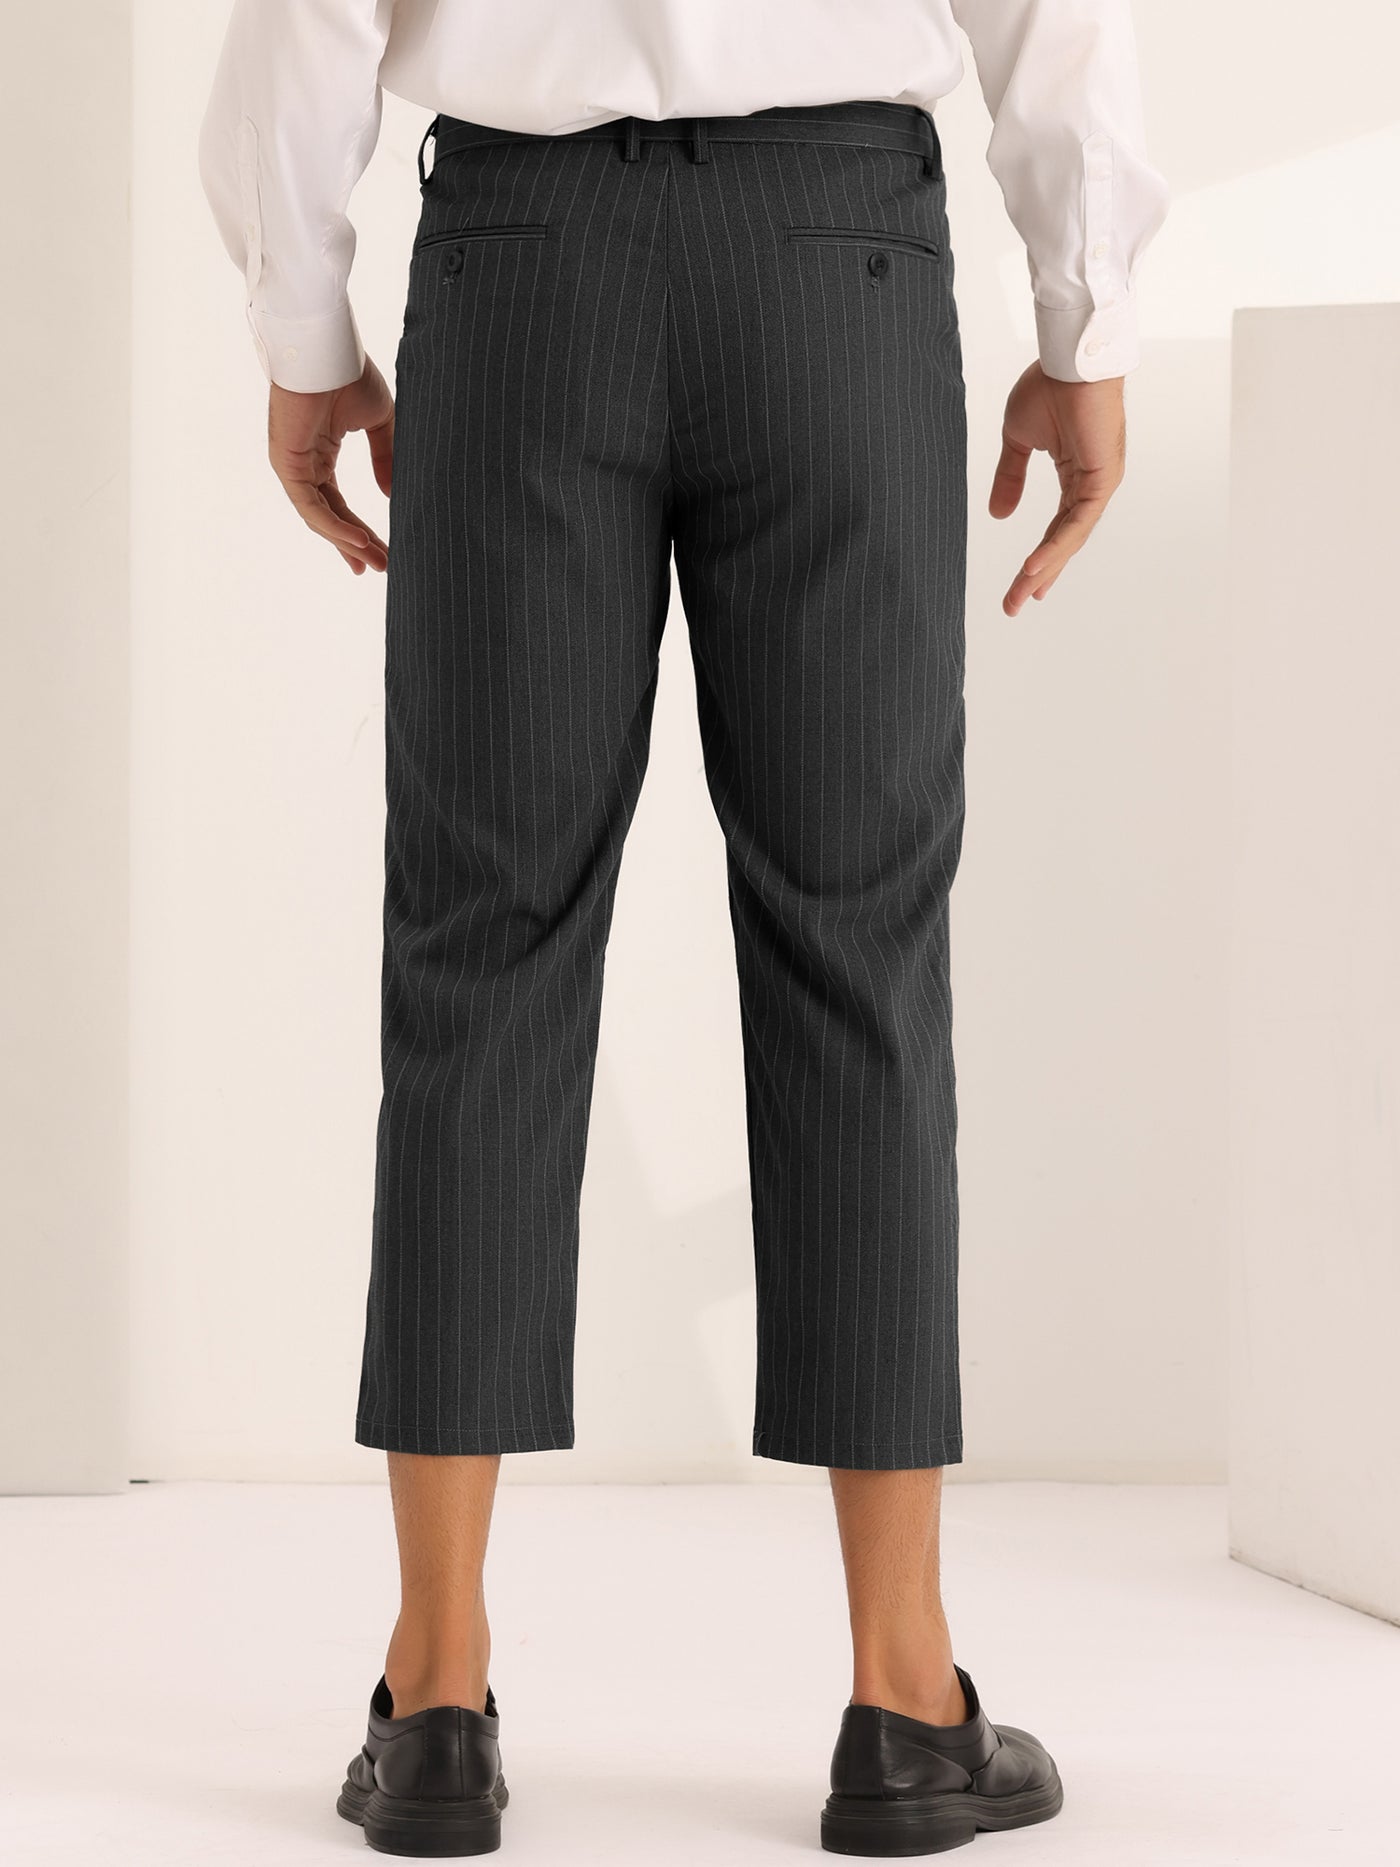 Bublédon Men's Striped Croppe pes Ankle Length Business Pants